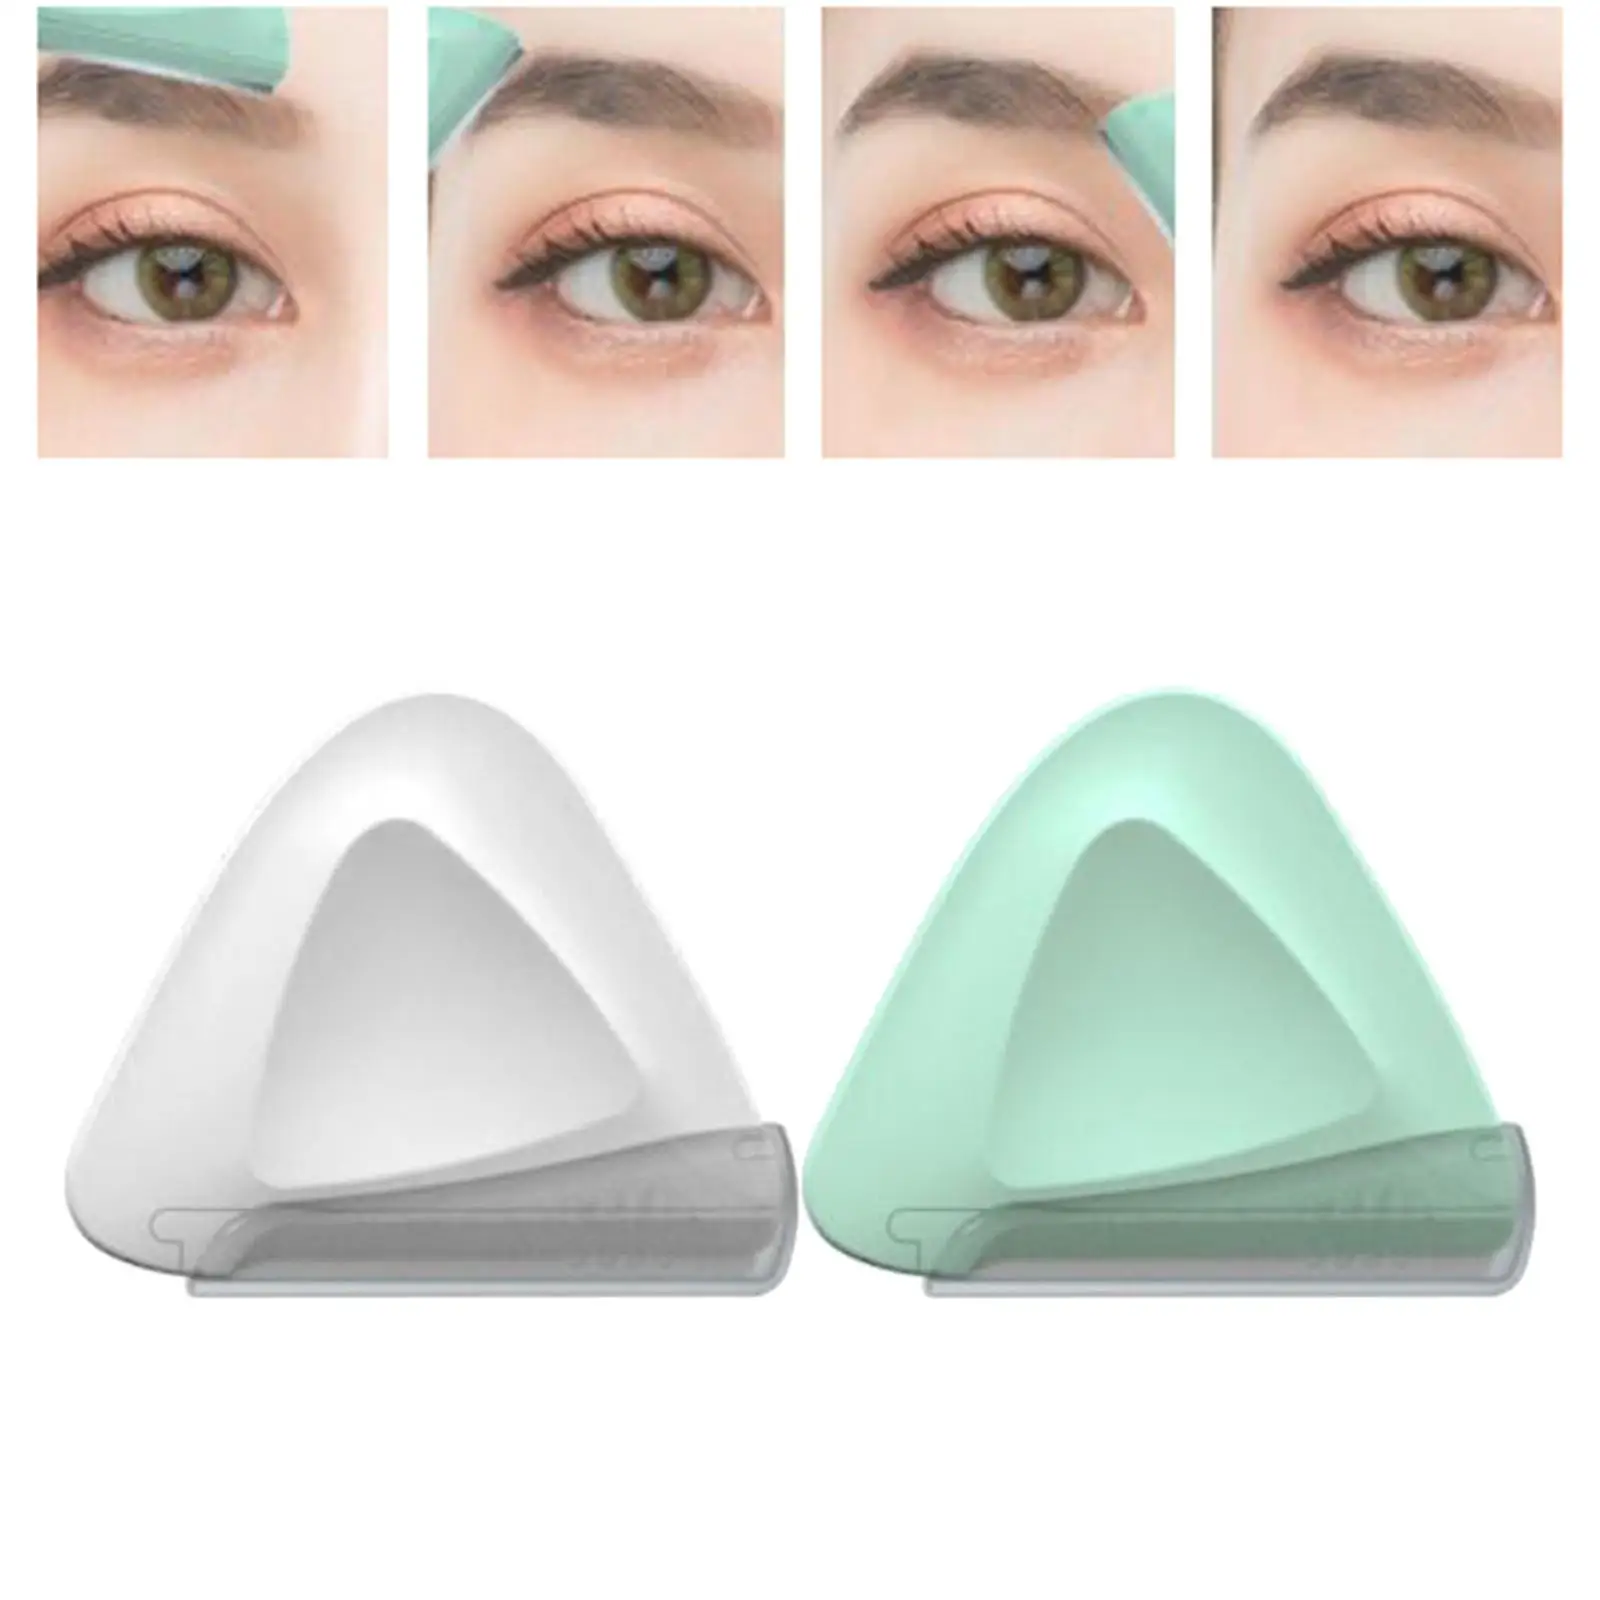 2 Pieces Eyebrow Portable Beauty Tool Facial for Novices Women